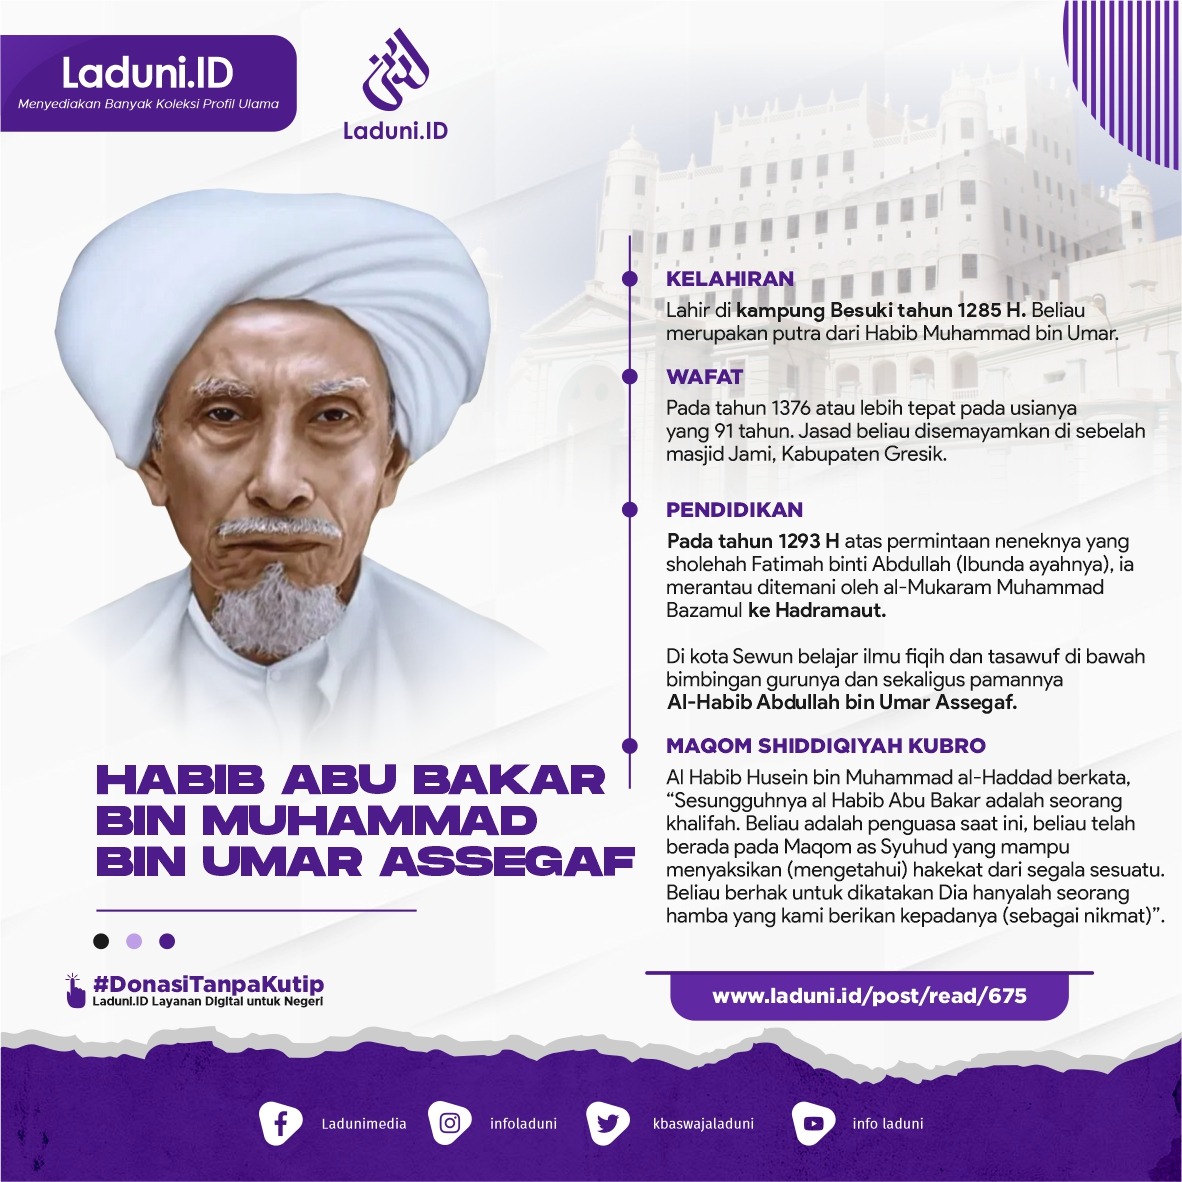 Biografi Habib Abu Bakar bin Muhammad bin Umar Assegaf